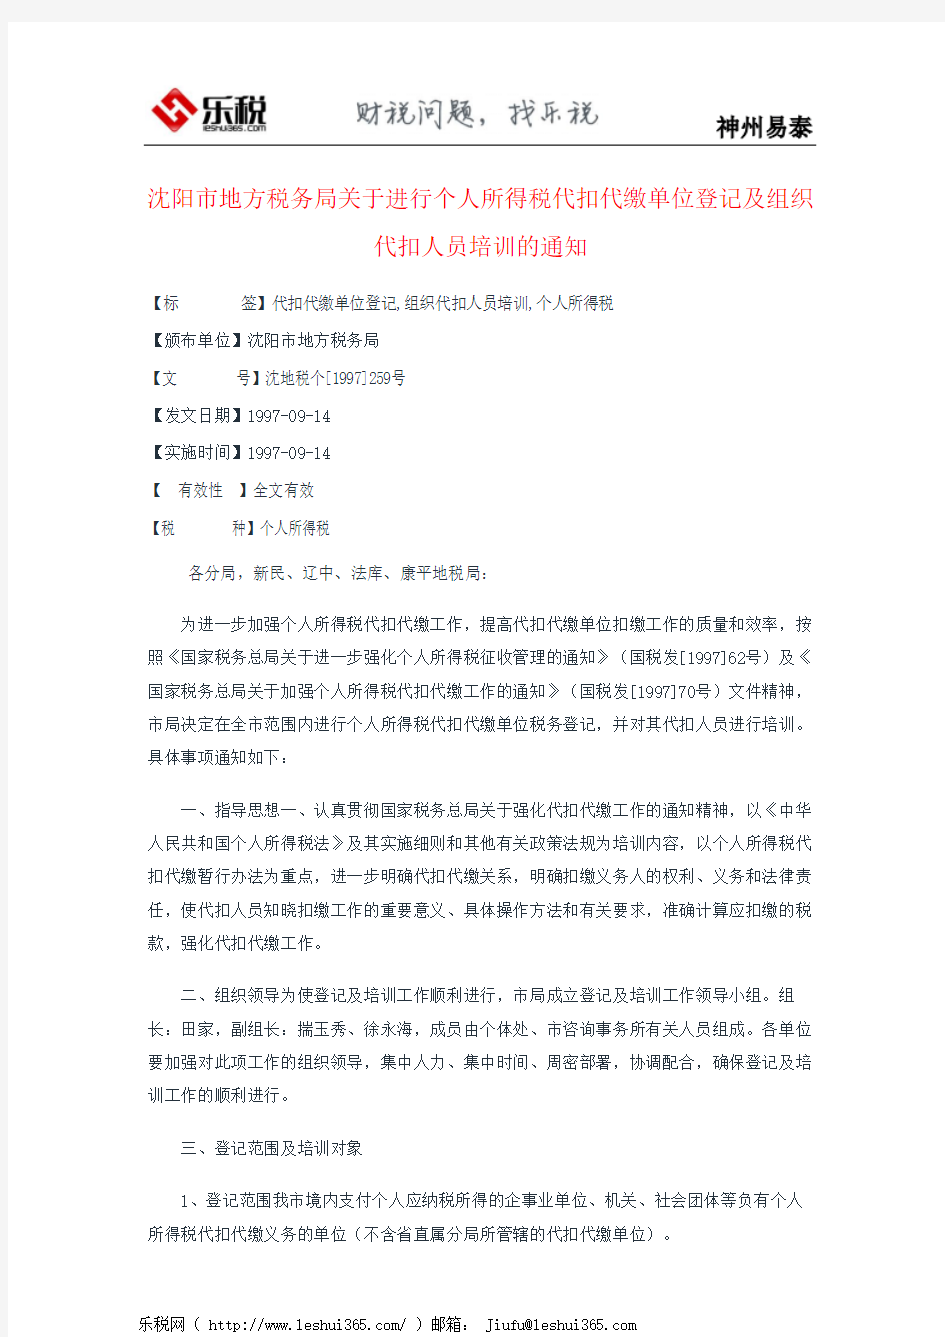 沈阳市地方税务局关于进行个人所得税代扣代缴单位登记及组织代扣